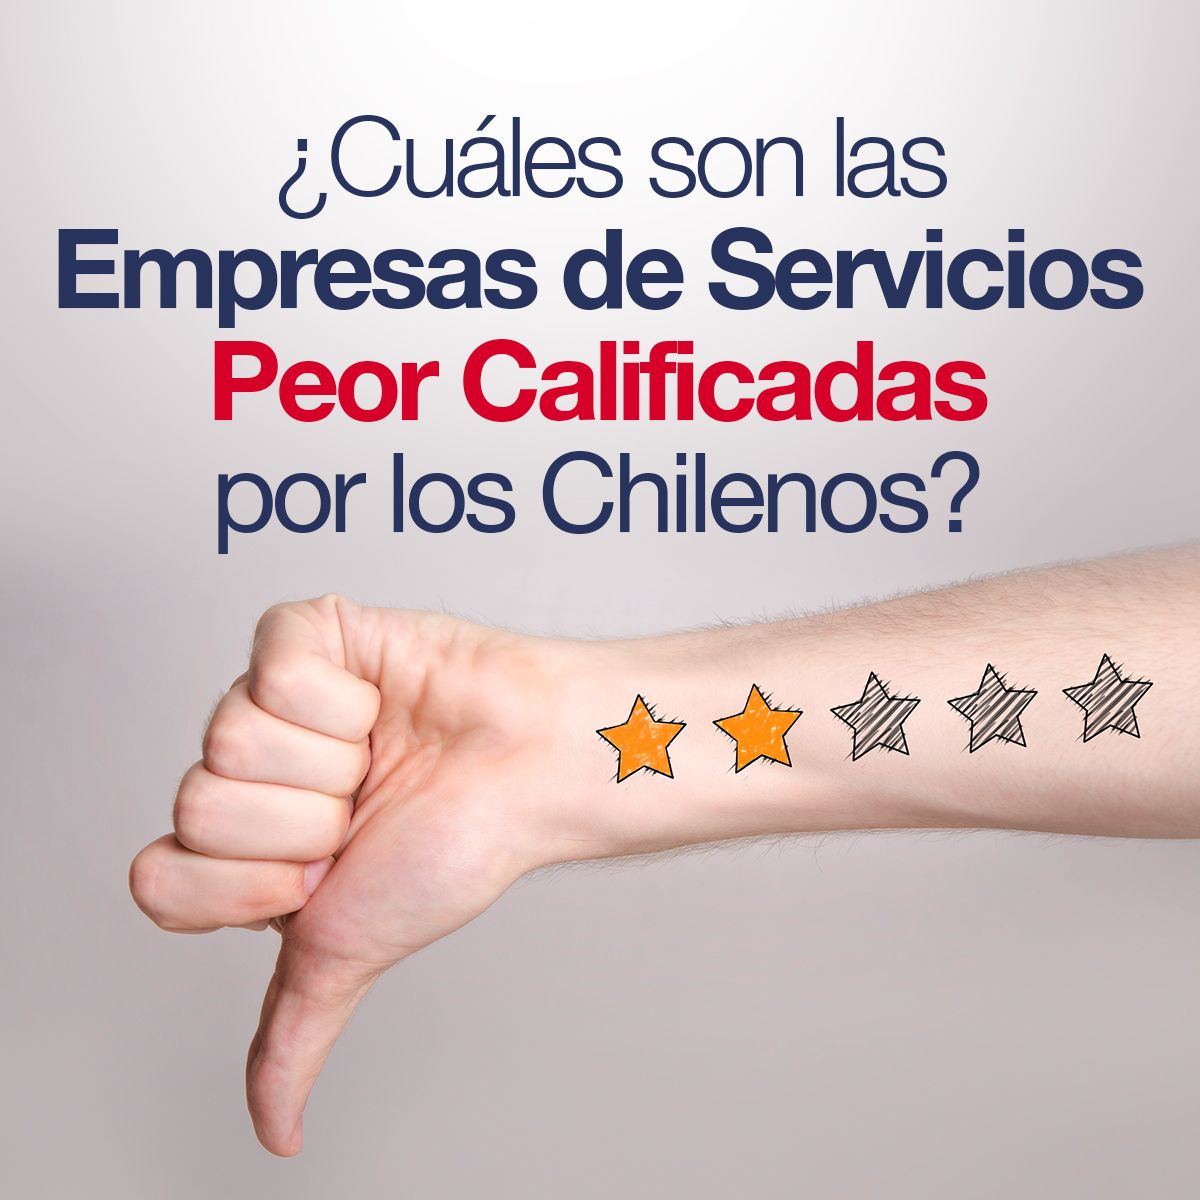 ¿Cuáles son las Empresas de Servicios Peor Calificadas por los Chilenos?